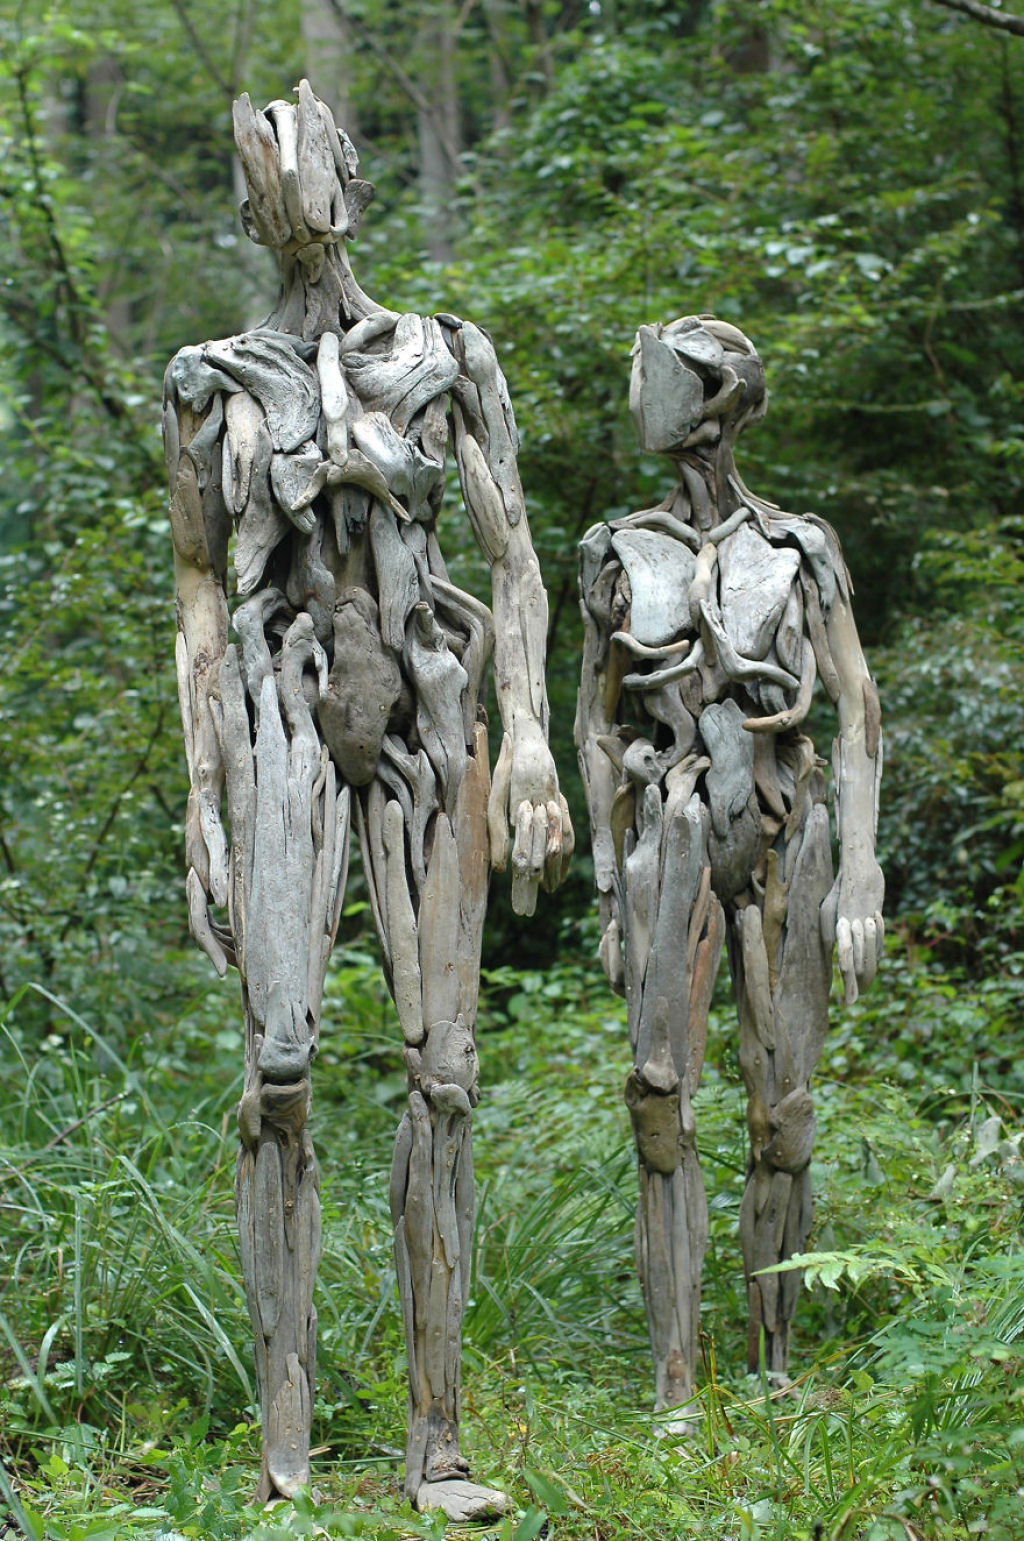 As inquietantes esculturas feitas com detrito de madeira no meio de bosque pelo japons Nagato Iwasaki 01